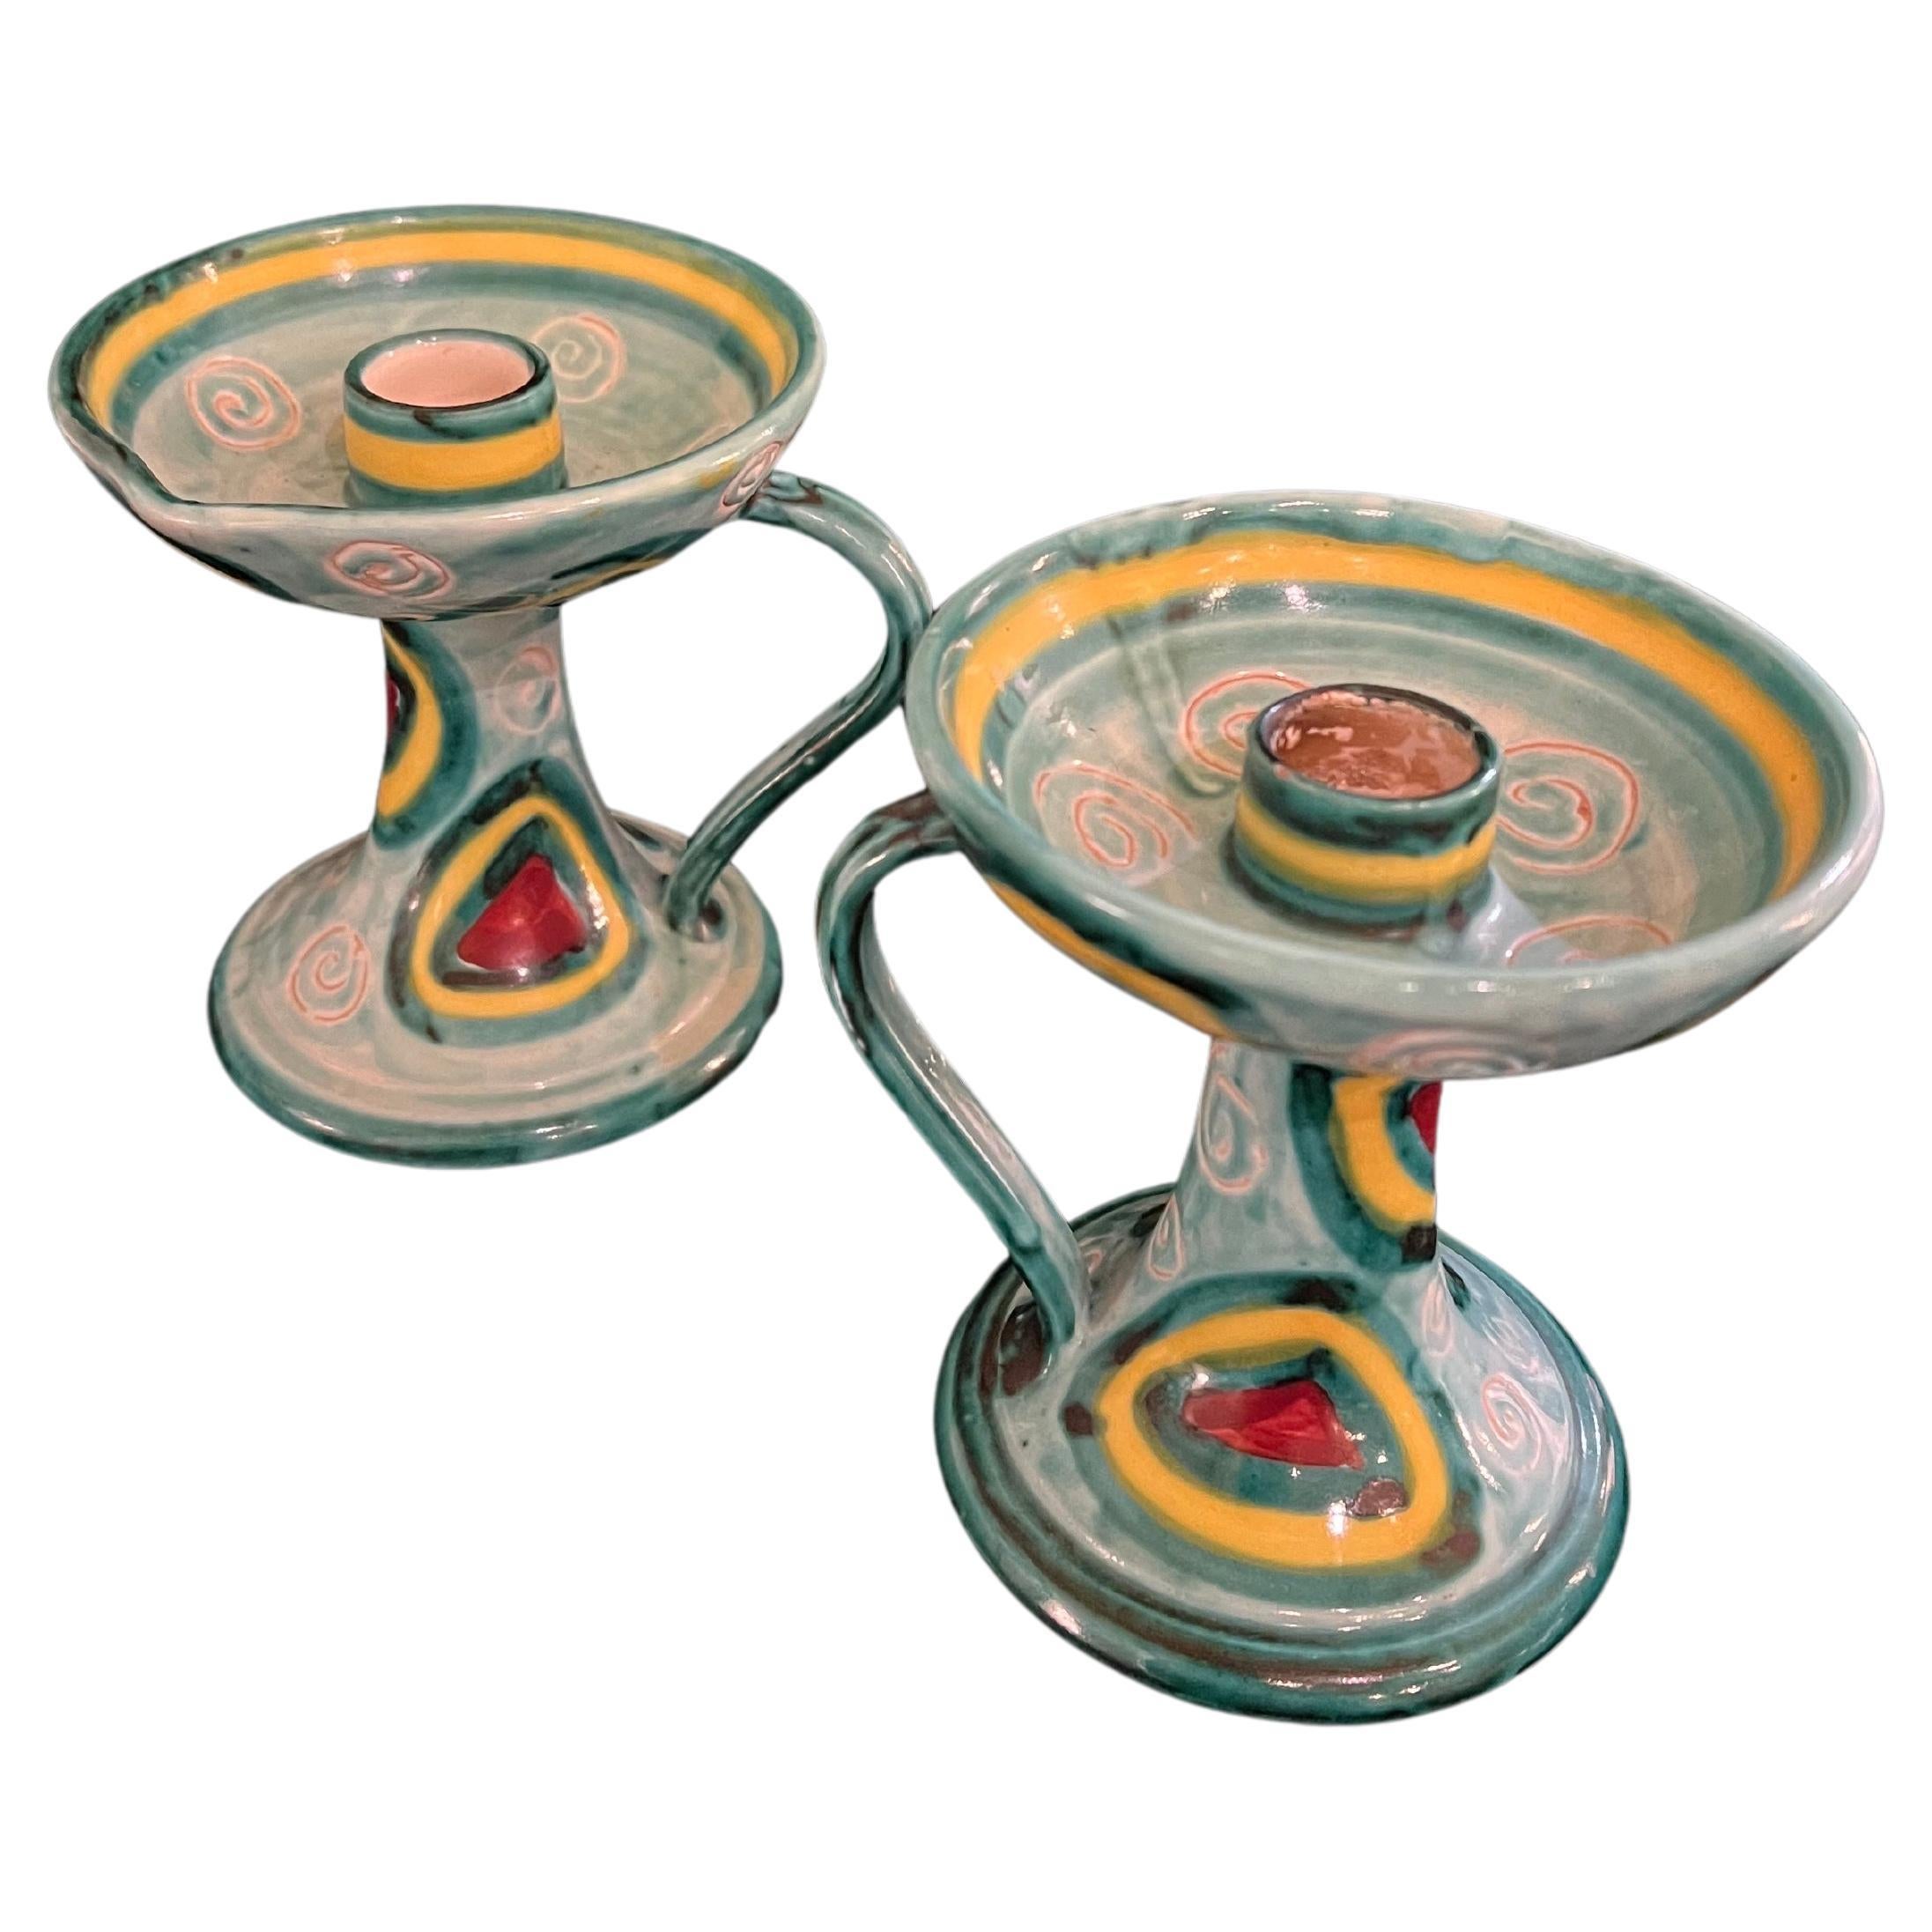 Schöne Paar italienische Keramik-Kerzenhalter in ausgezeichnetem Zustand keine Chips oder Risse, ca. 1950's an der Unterseite PE gestempelt. Schöne Farben und tolles Design.